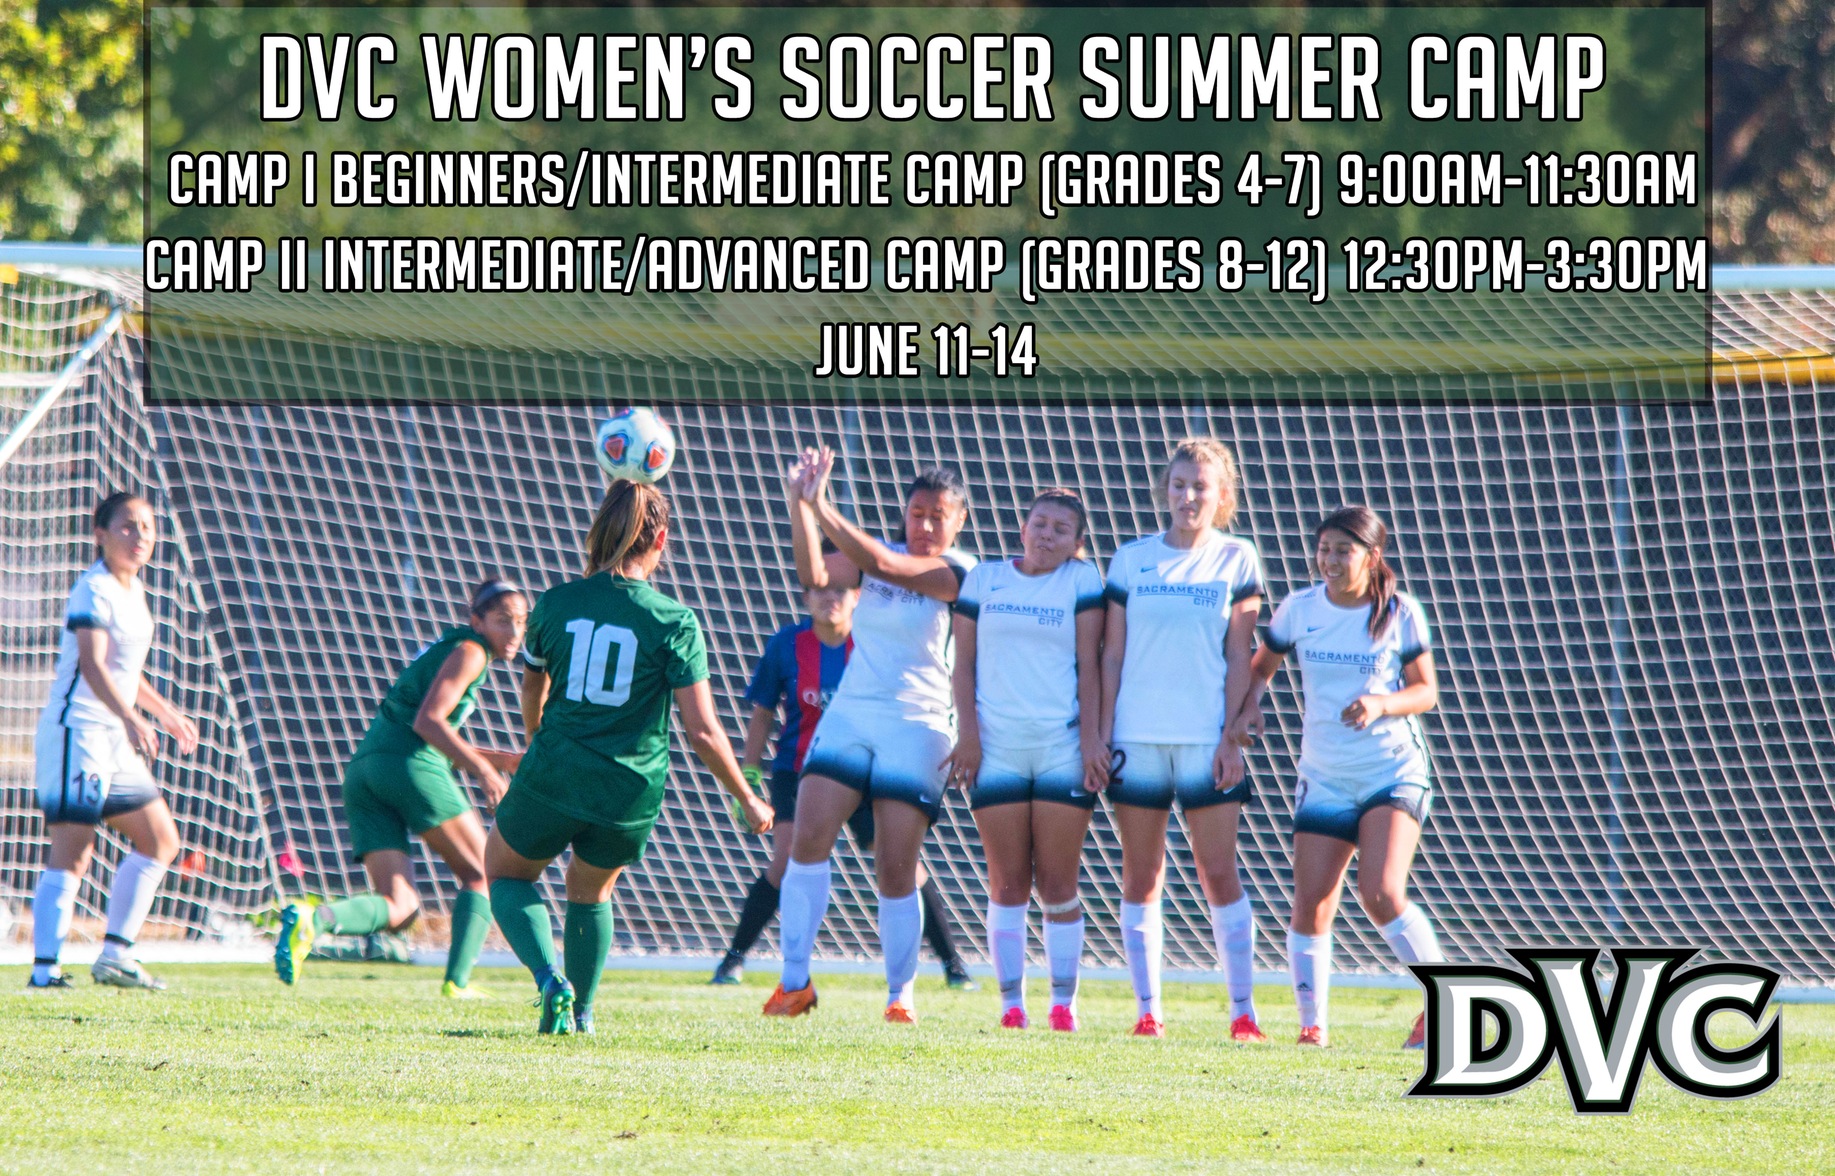 DVC Women's Soccer Summer Camp June 11-14